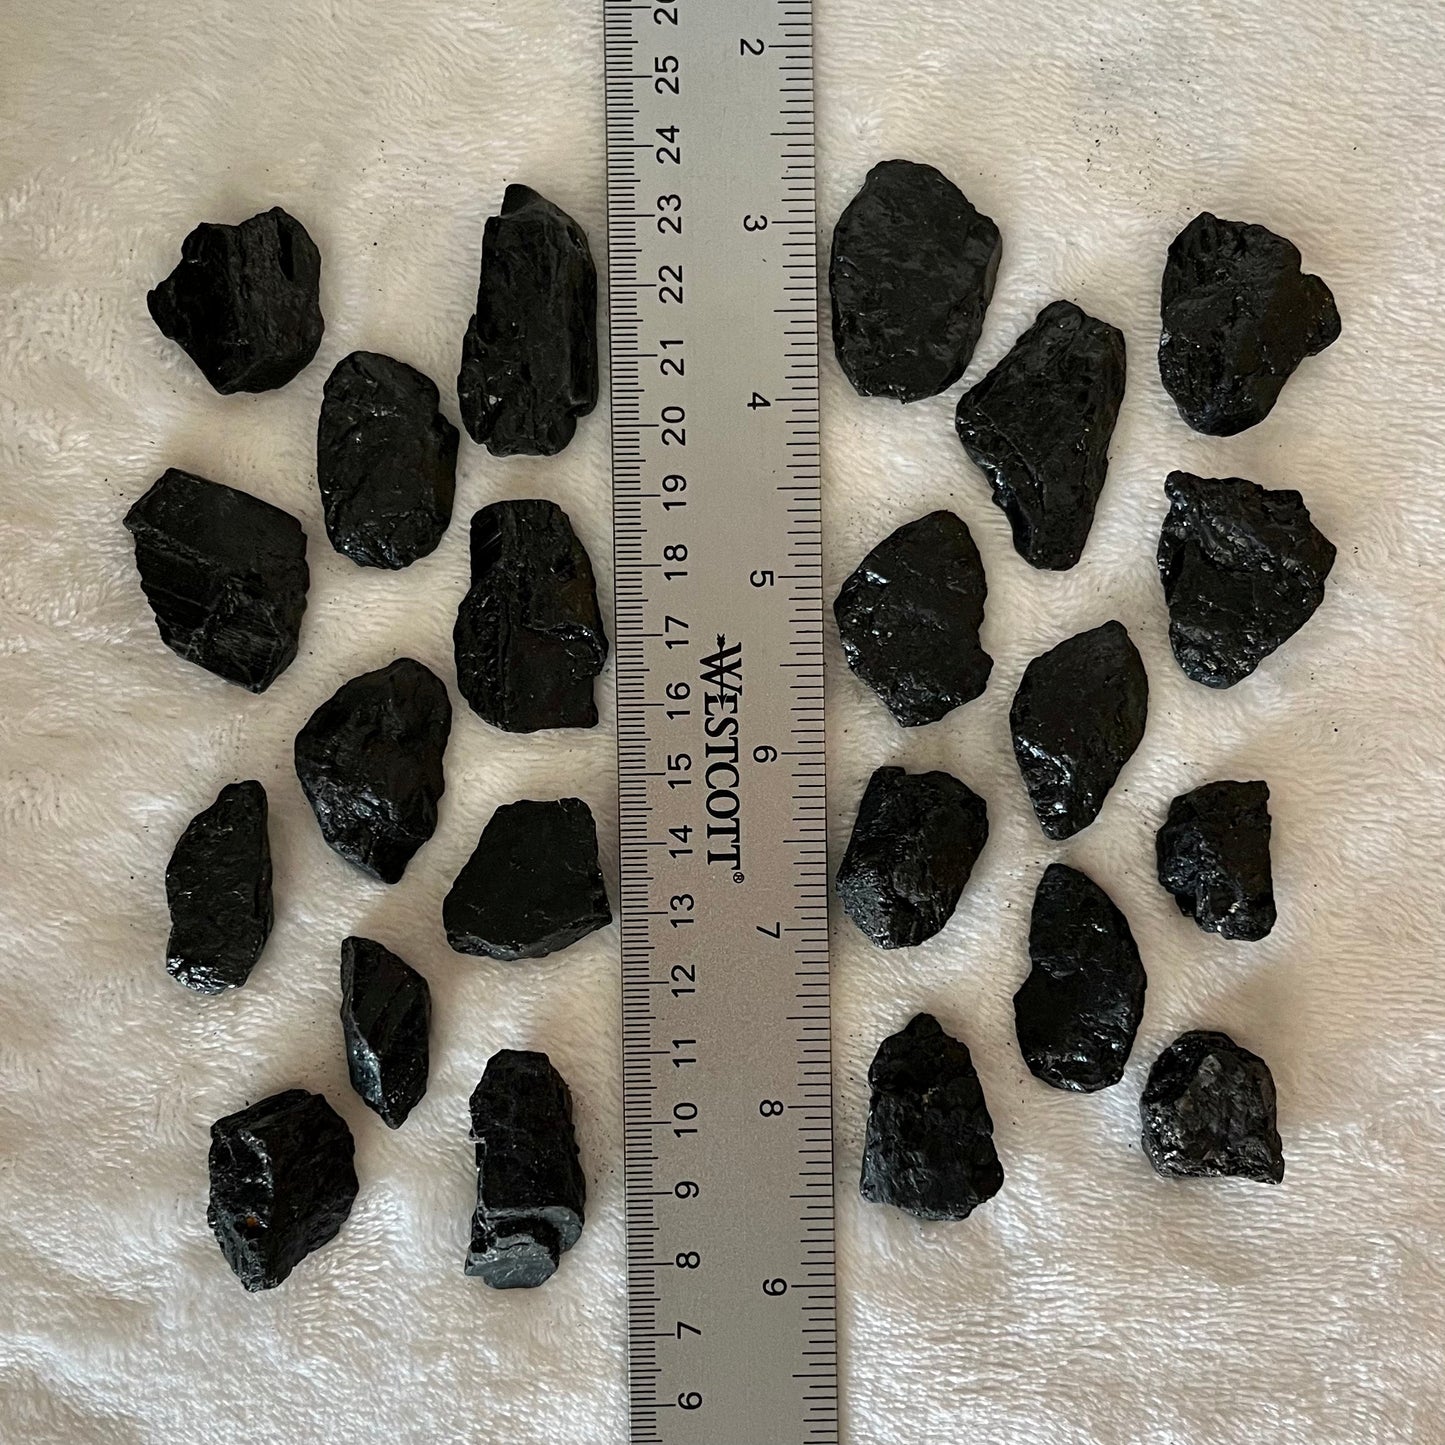 Black Tourmaline Chunks, Small, 1 Pound Lot  WC-0027